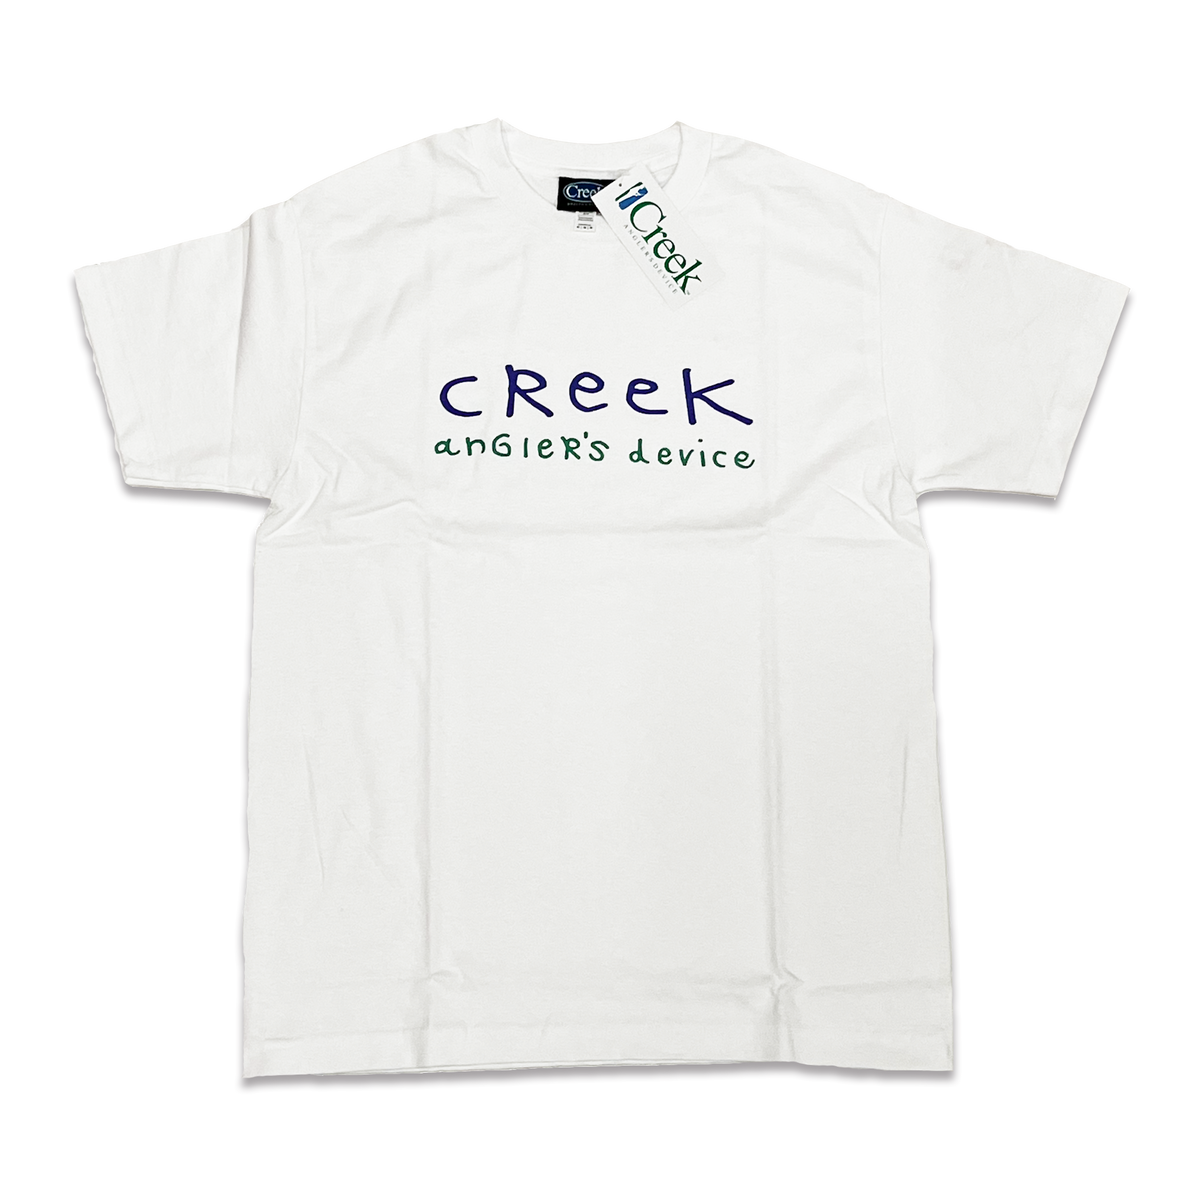 大注目 Device Angler's Creek Tシャツ ホワイト 白 未使用 新品 ...